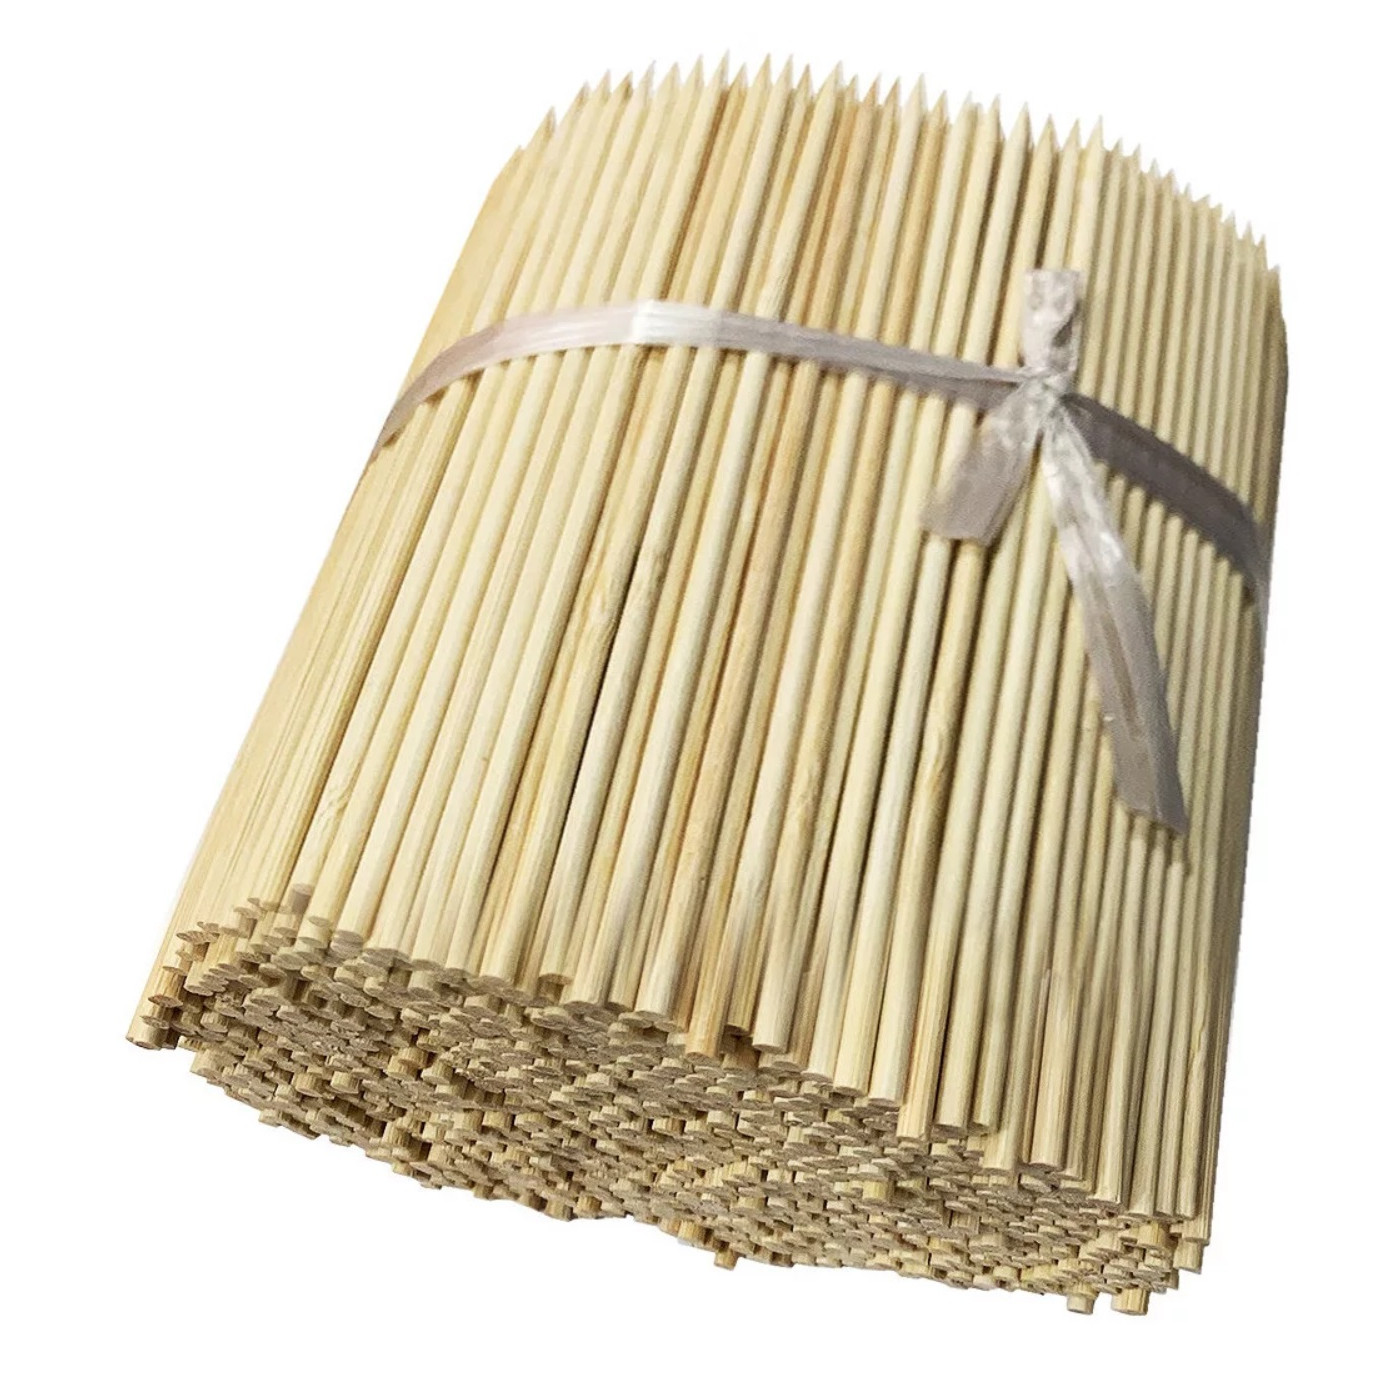 Juego de 1000 varas de bambú cortas (2,5 mm x 15 cm